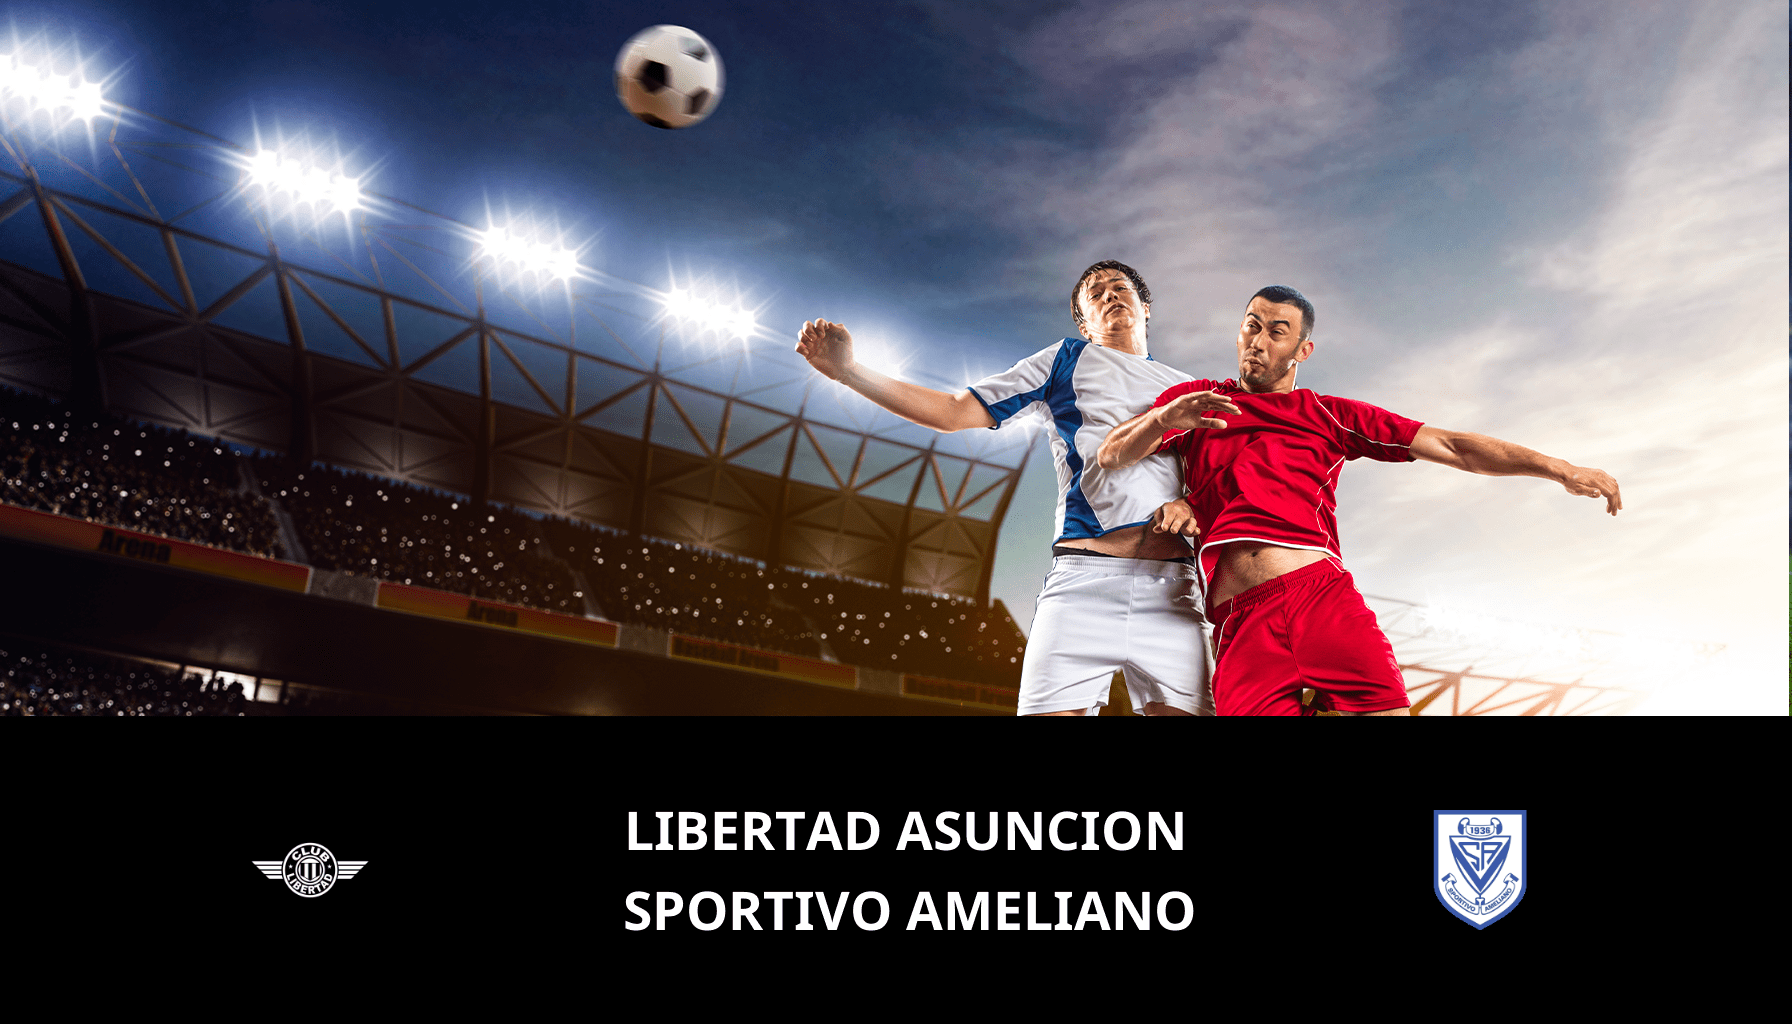 Previsione per Libertad Asuncion VS Sportivo Ameliano il 11/03/2024 Analysis of the match